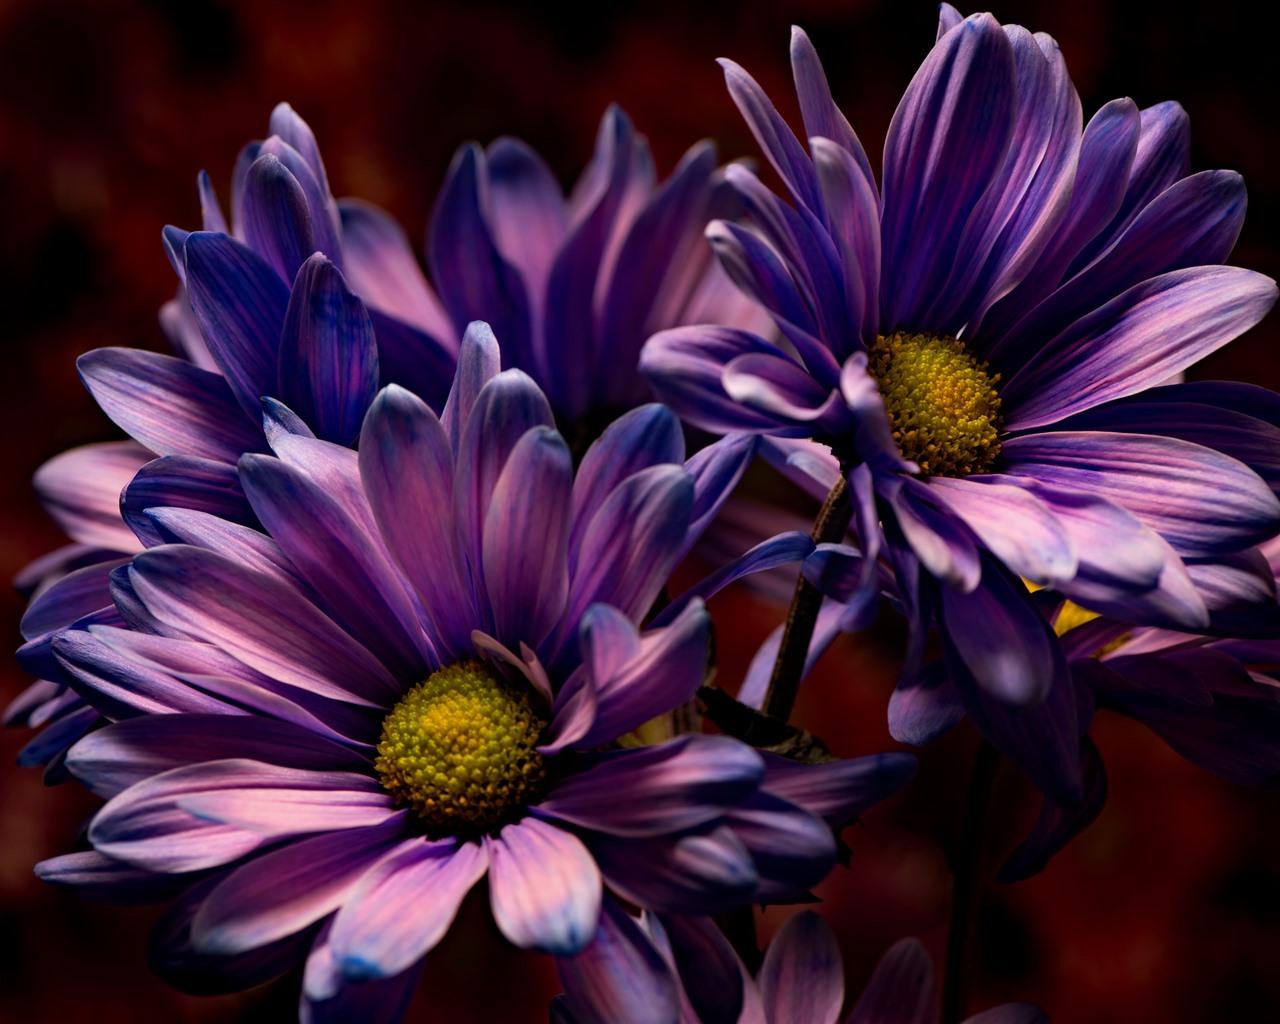 Dark Purple Flowers HD Wallpapers - Top Free Dark Purple Flowers HD ...